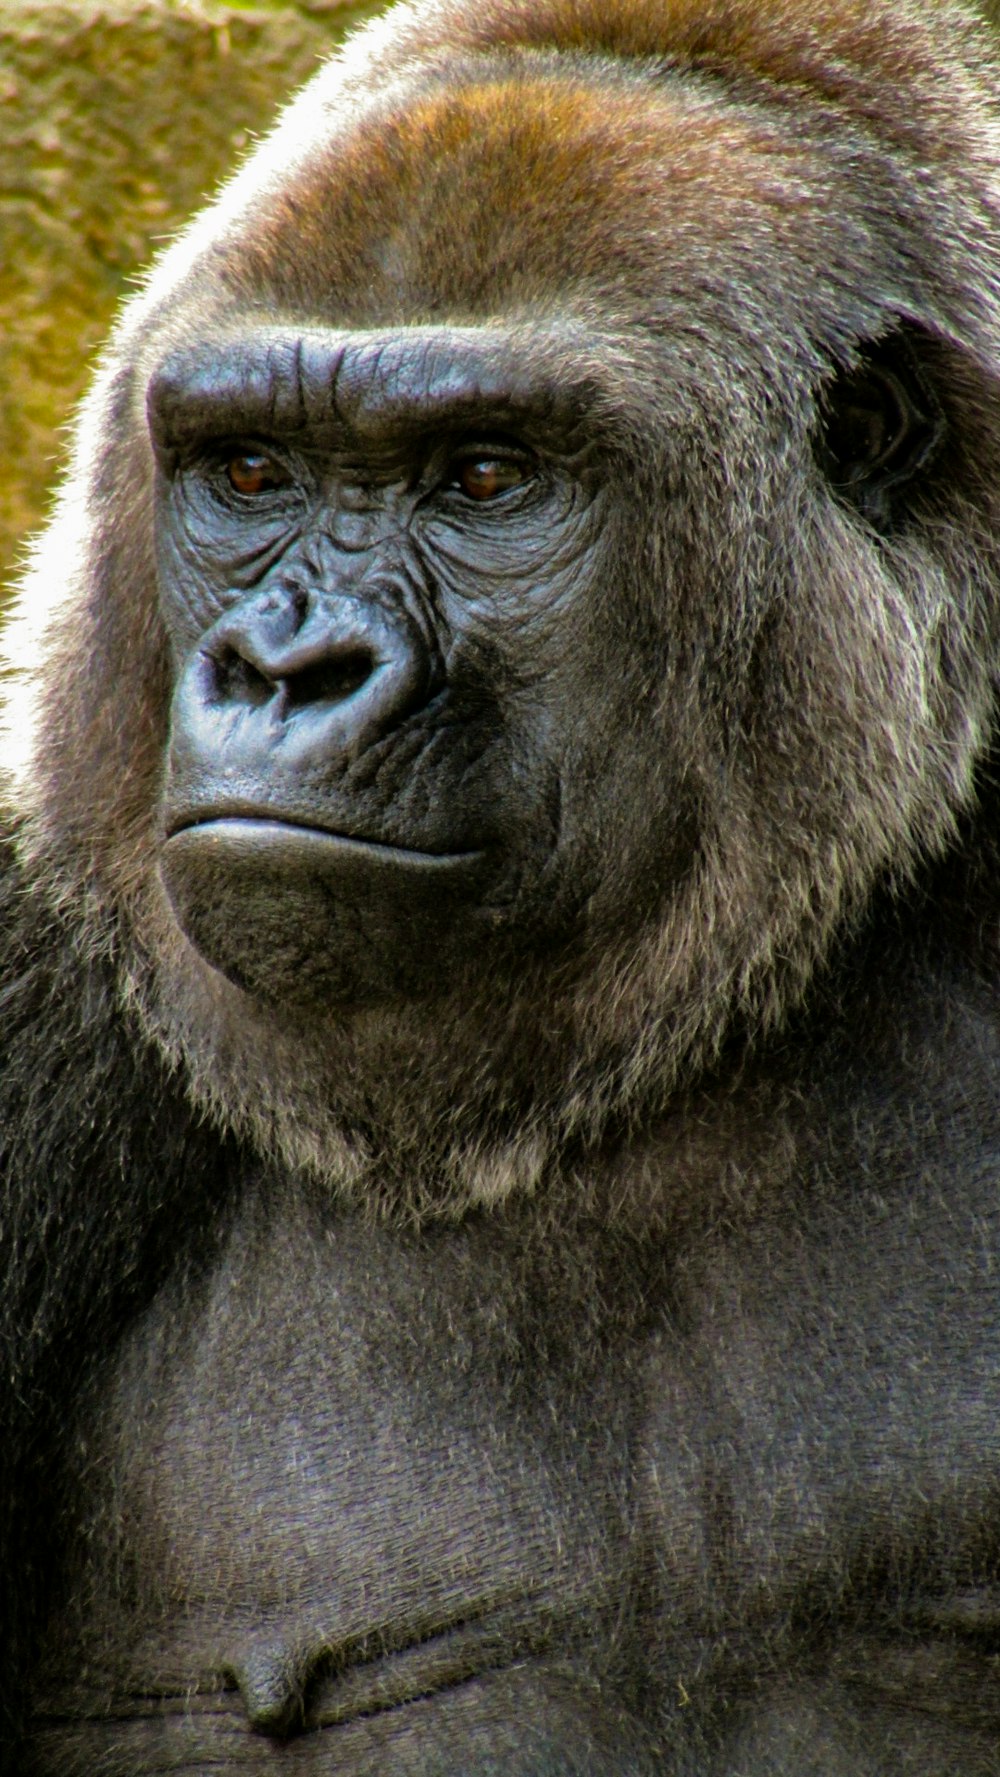 close-up photo of gorilla